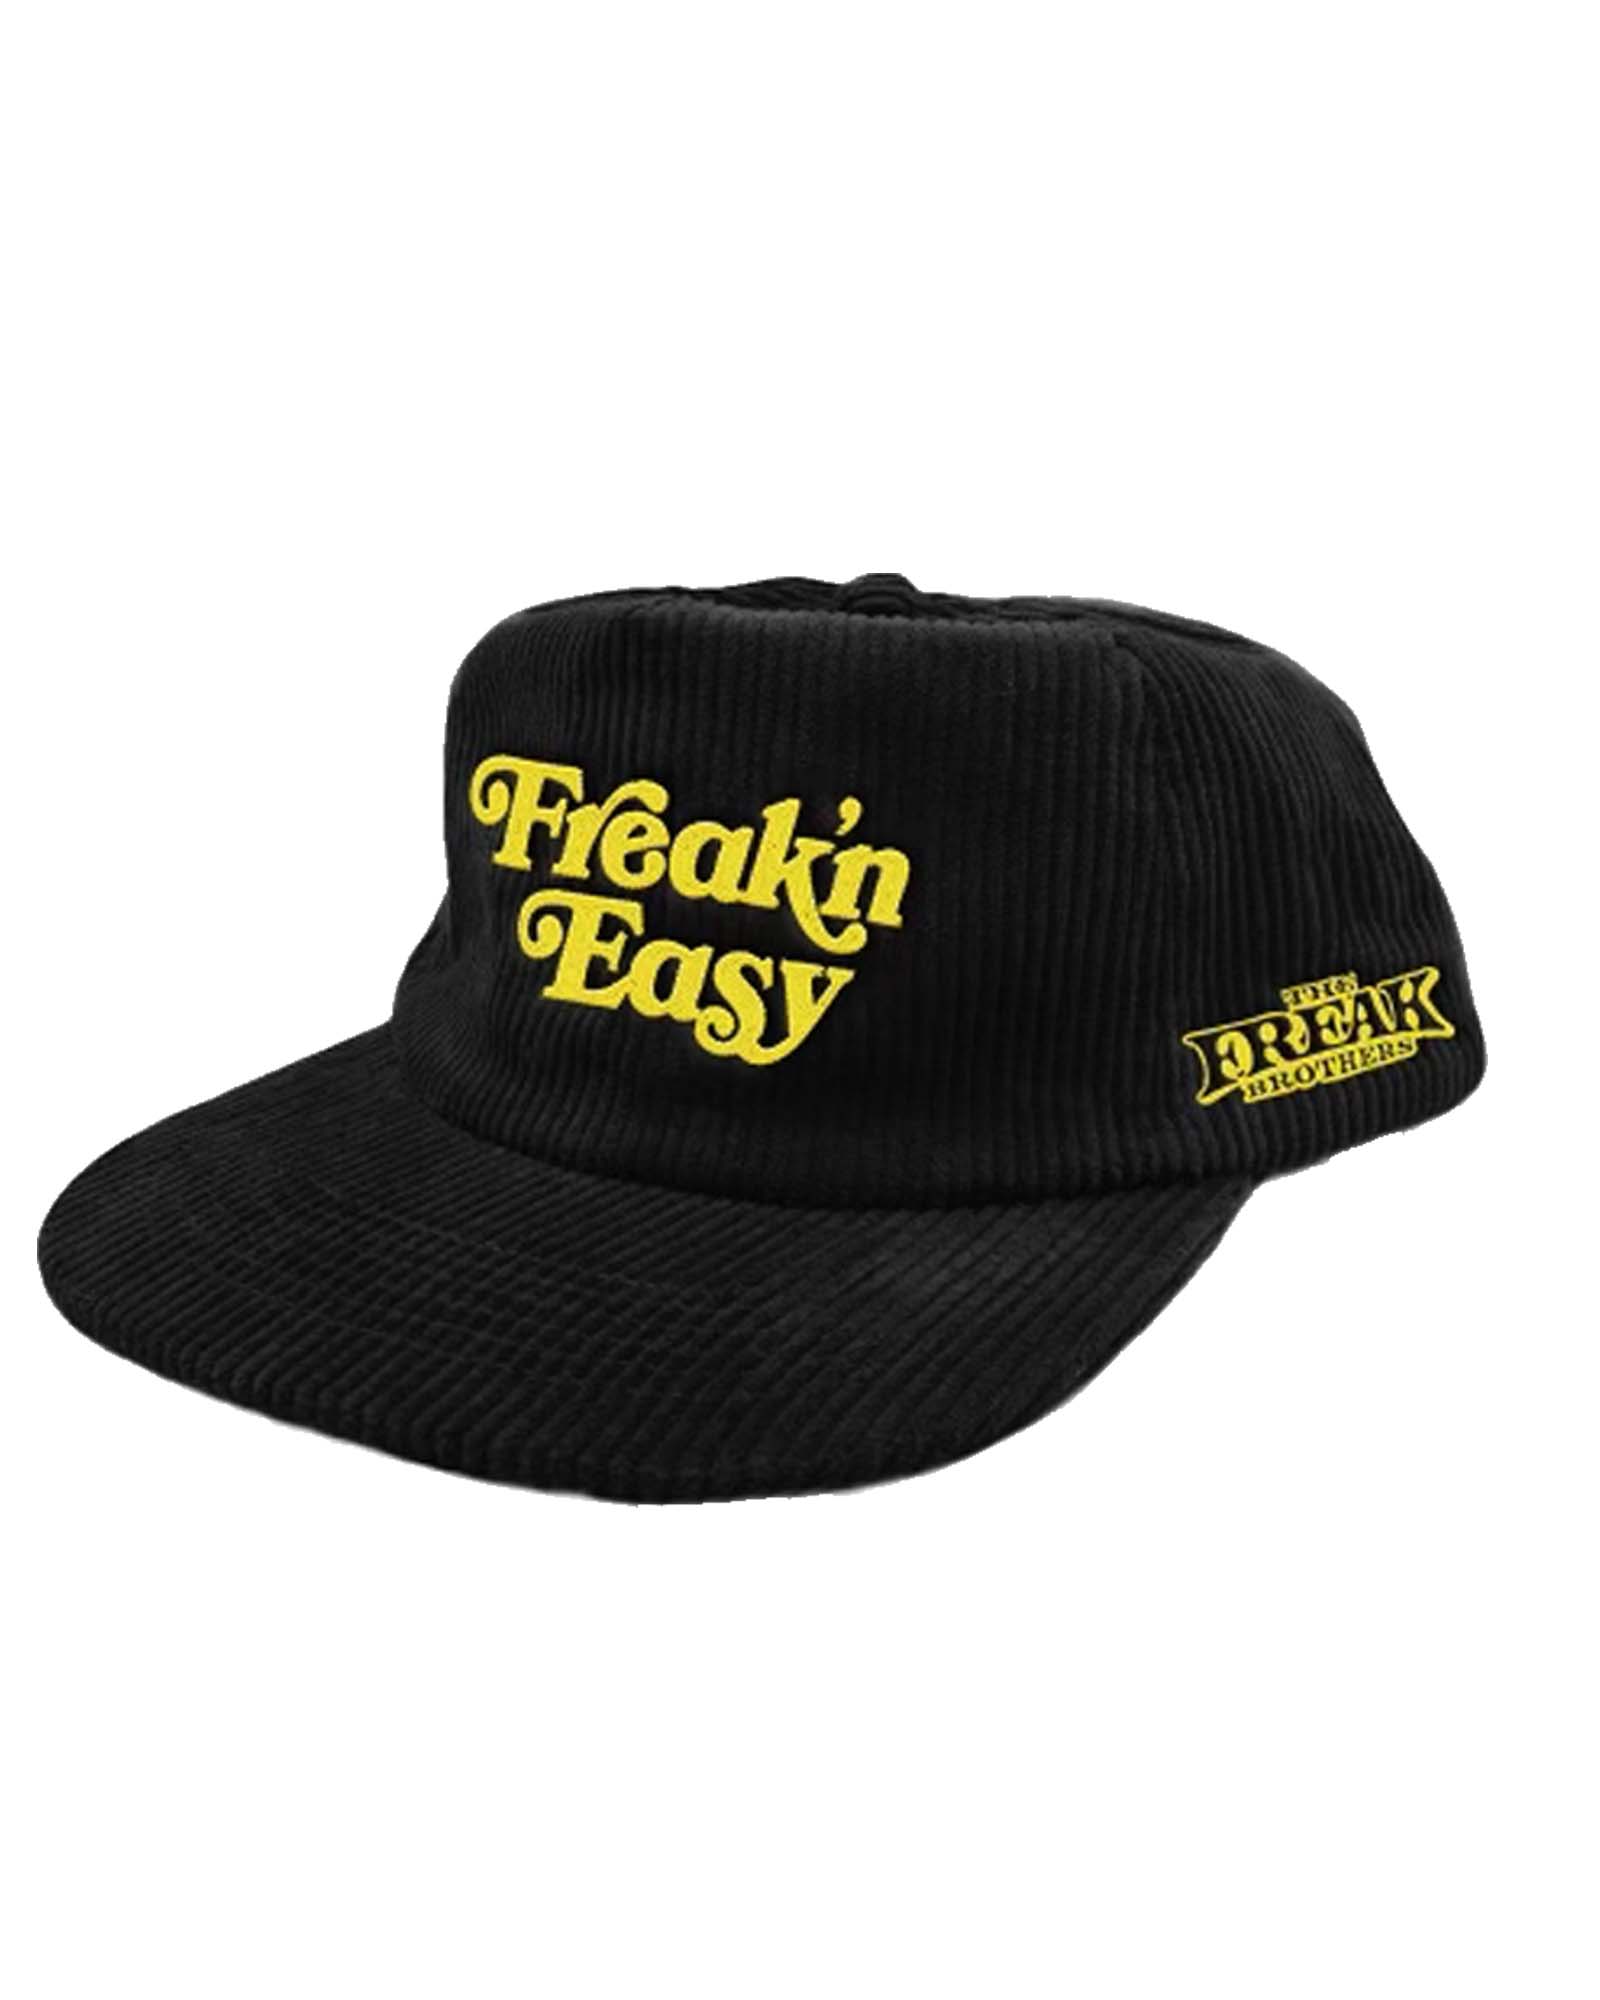 Freak\'n The – Hat Freak Easy Snapback Brothers